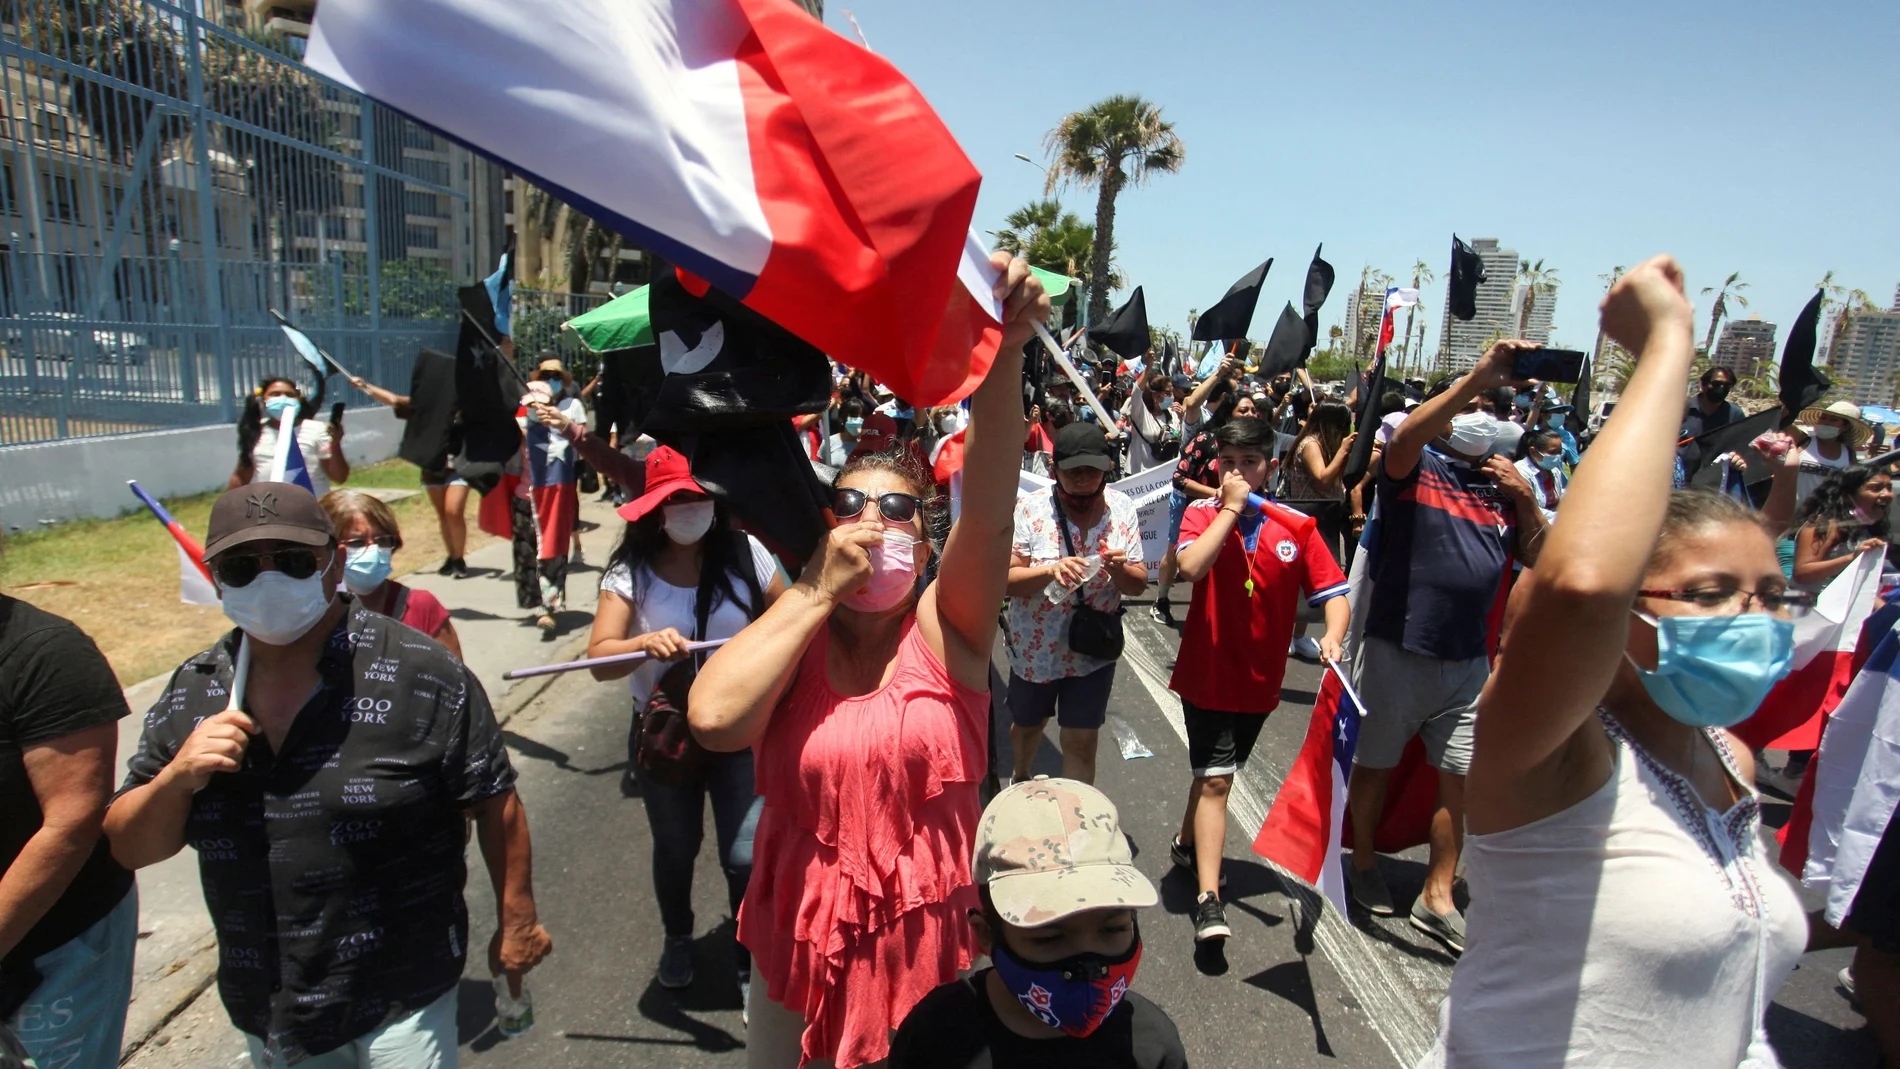 Los manifestantes participan en una manifestación contra la migración y la delincuencia, en Iquique, Chile